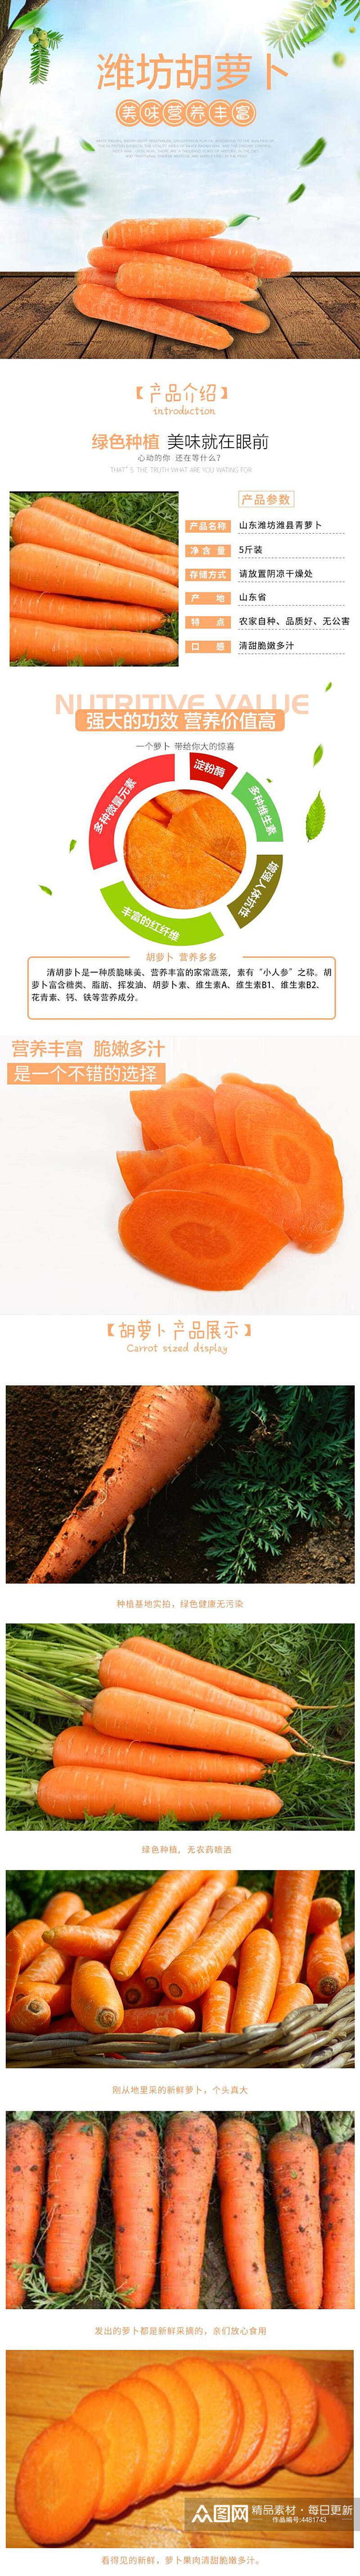 潍坊胡萝卜蔬菜电商详情页素材